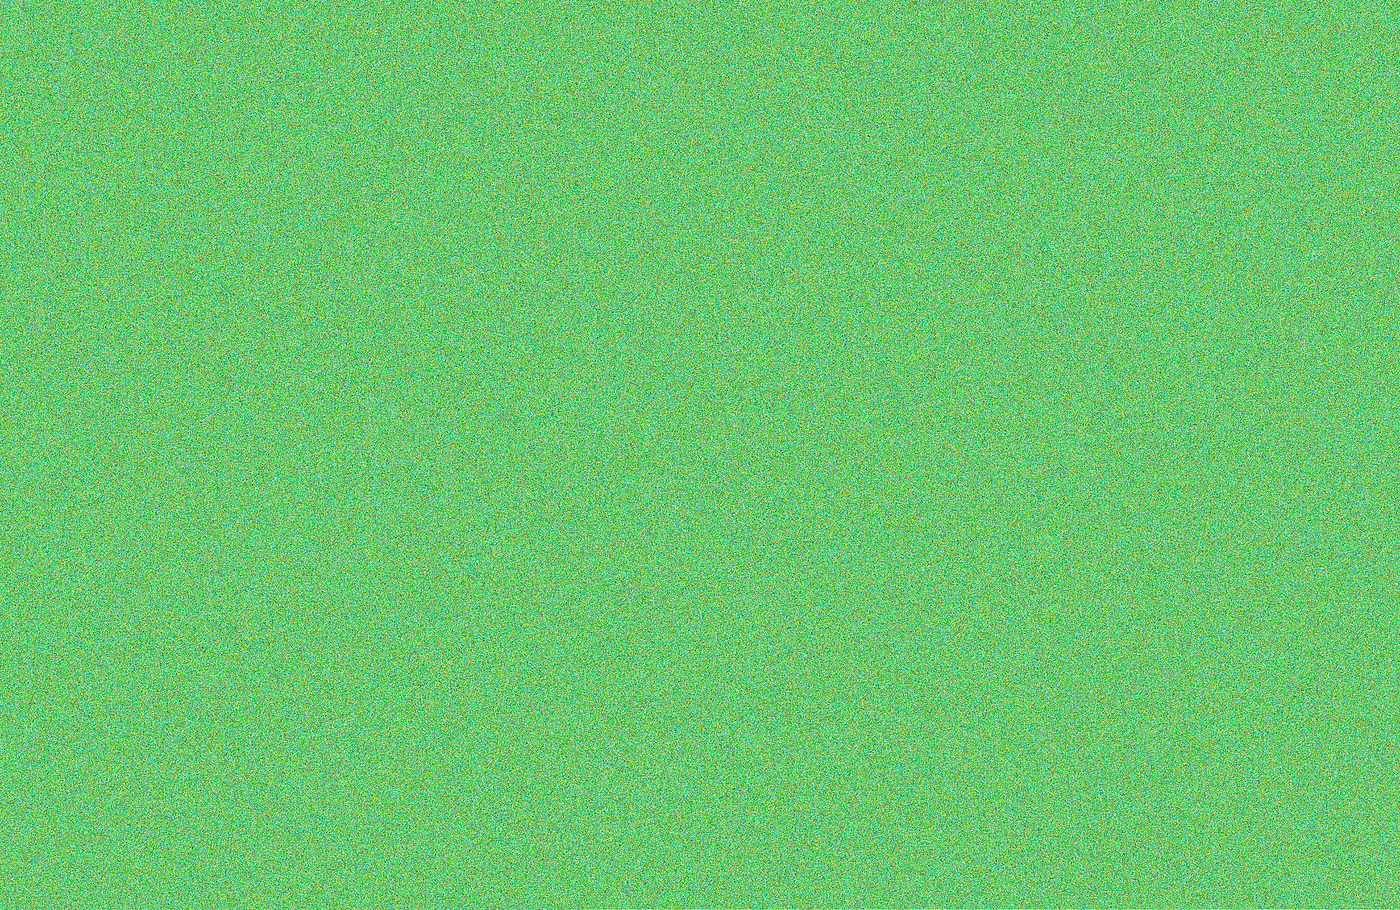 Adrian Sauer, 16.777216 Farben in rot, grün und blau – grün 